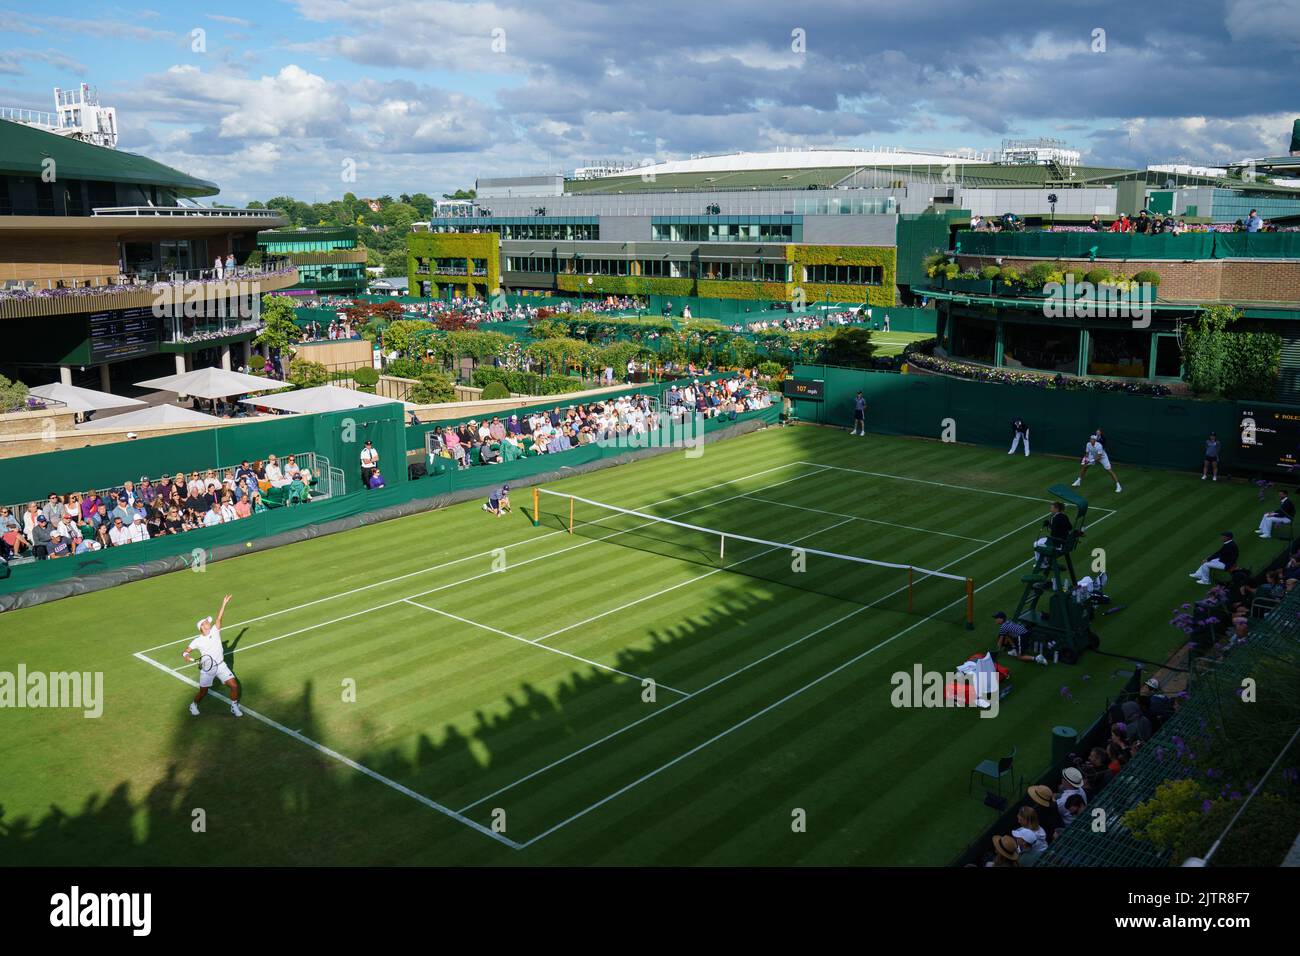 Allgemeine Ansichten von Court 18 mit Enzo Couacaud und John isner bei den Meisterschaften 2022. Im All England Lawn Tennis Club, Wimbledon. Stockfoto